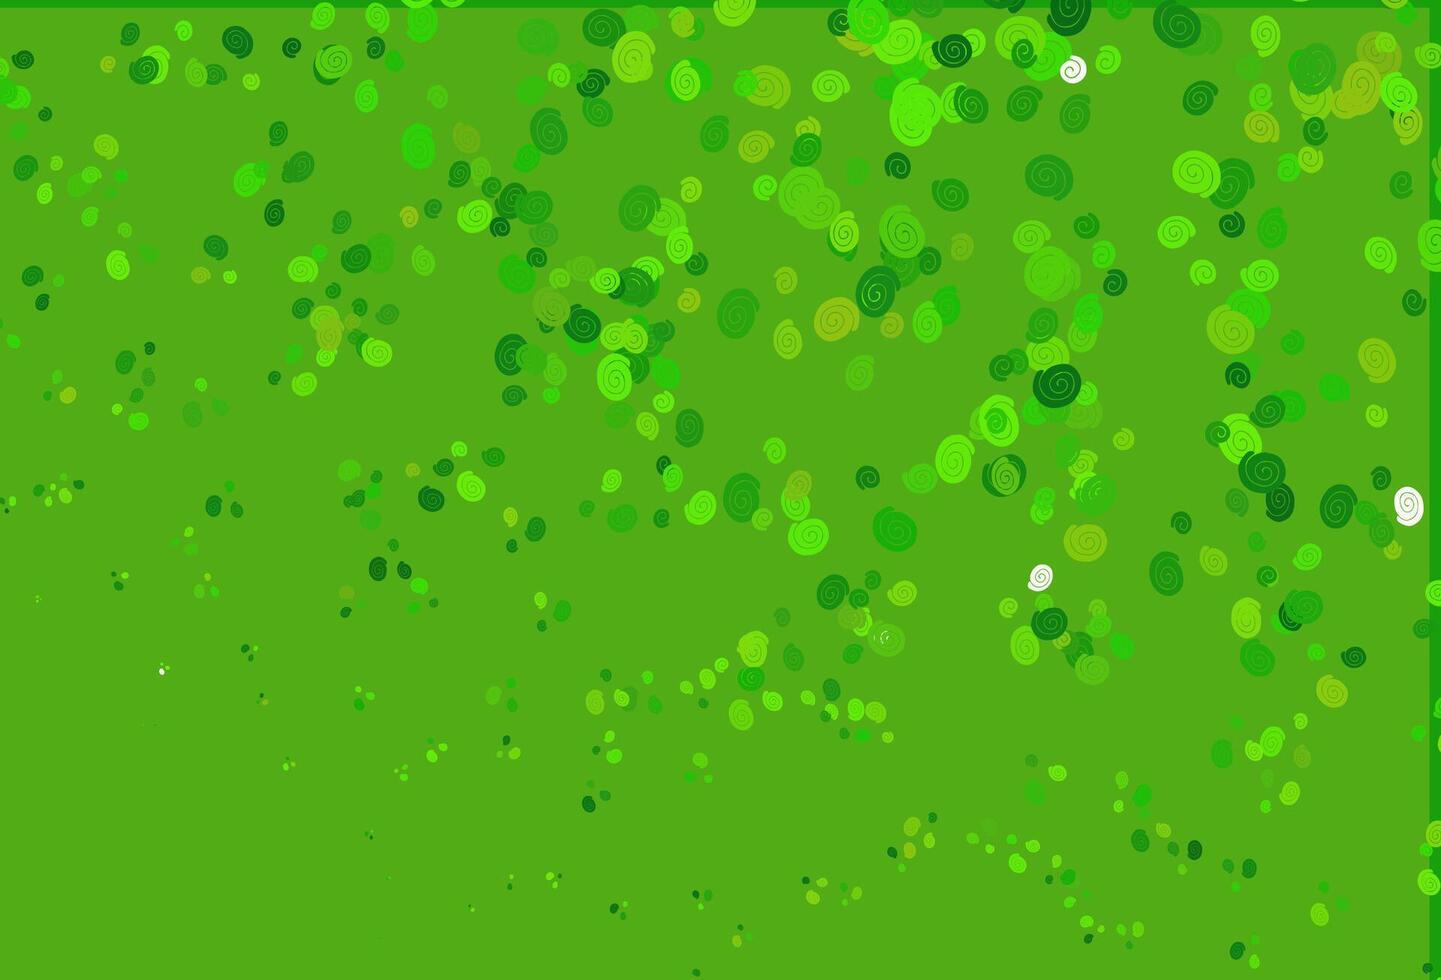 fundo do vetor verde claro com formas de bolha.